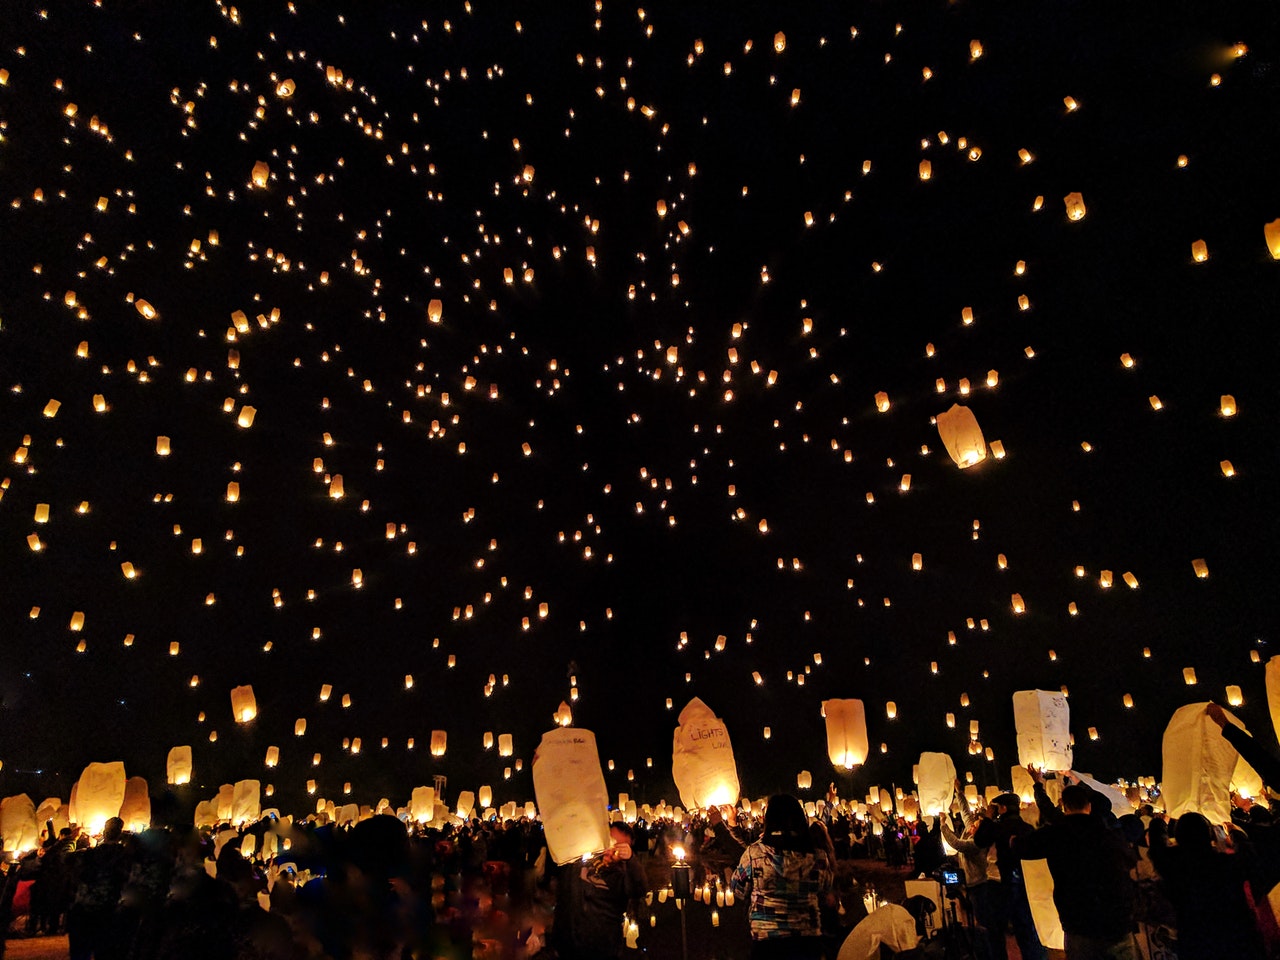 Celebration of Diwali in India